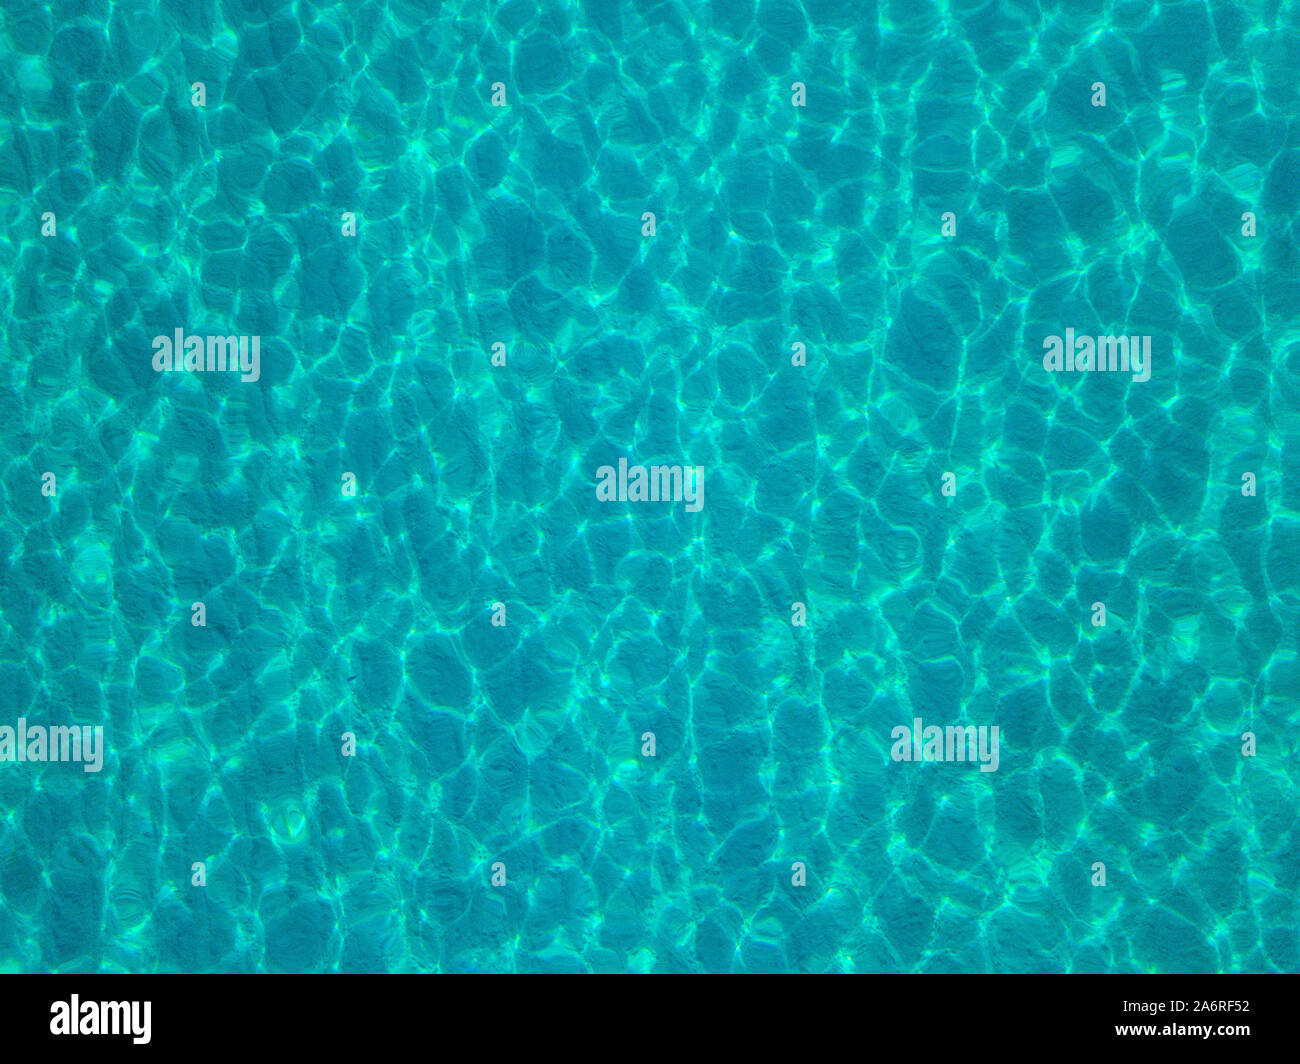 Luftaufnahme von einem sandigen Meeresboden, kristallklares blaues Wasser, Reflexionen der Sonne Wellen auf der Wasseroberfläche. Textur und Hintergrund. Pool Stockfoto